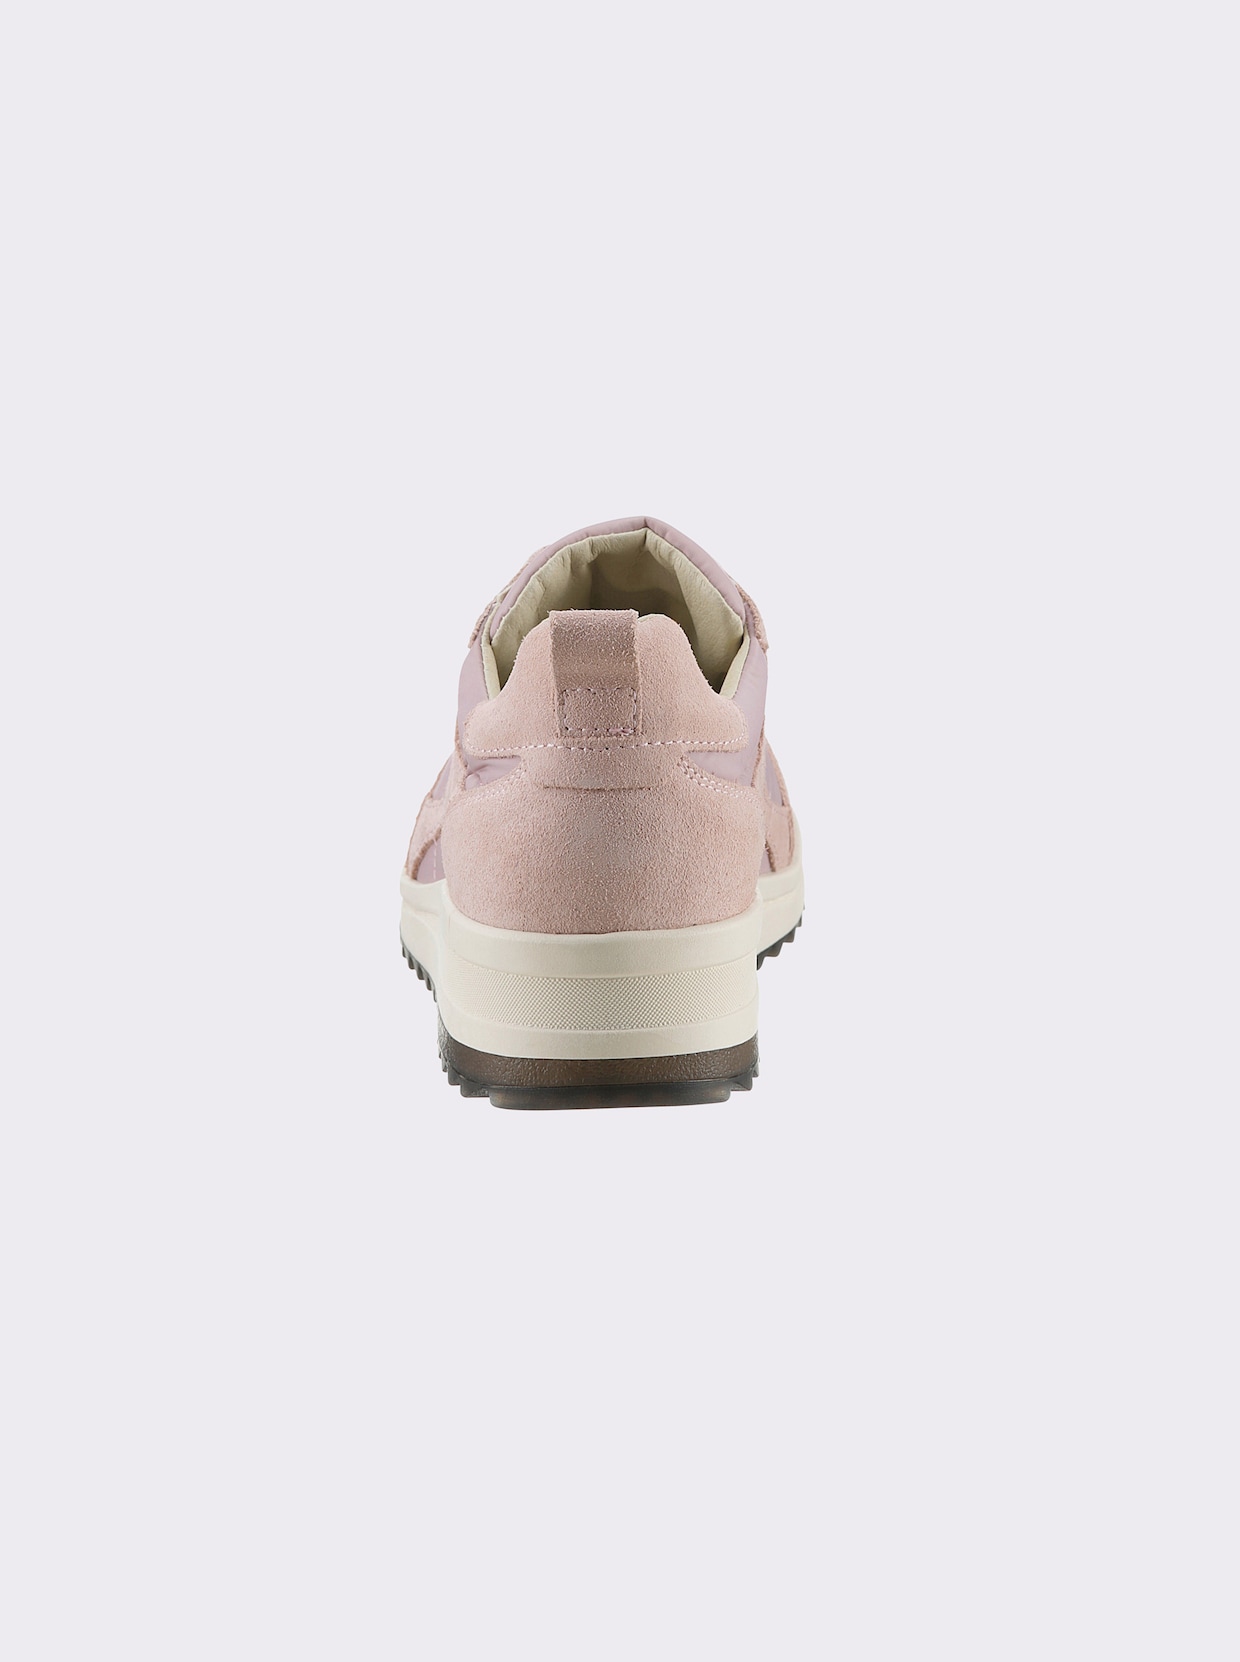 airsoft modern+ Sneaker - hellrosé